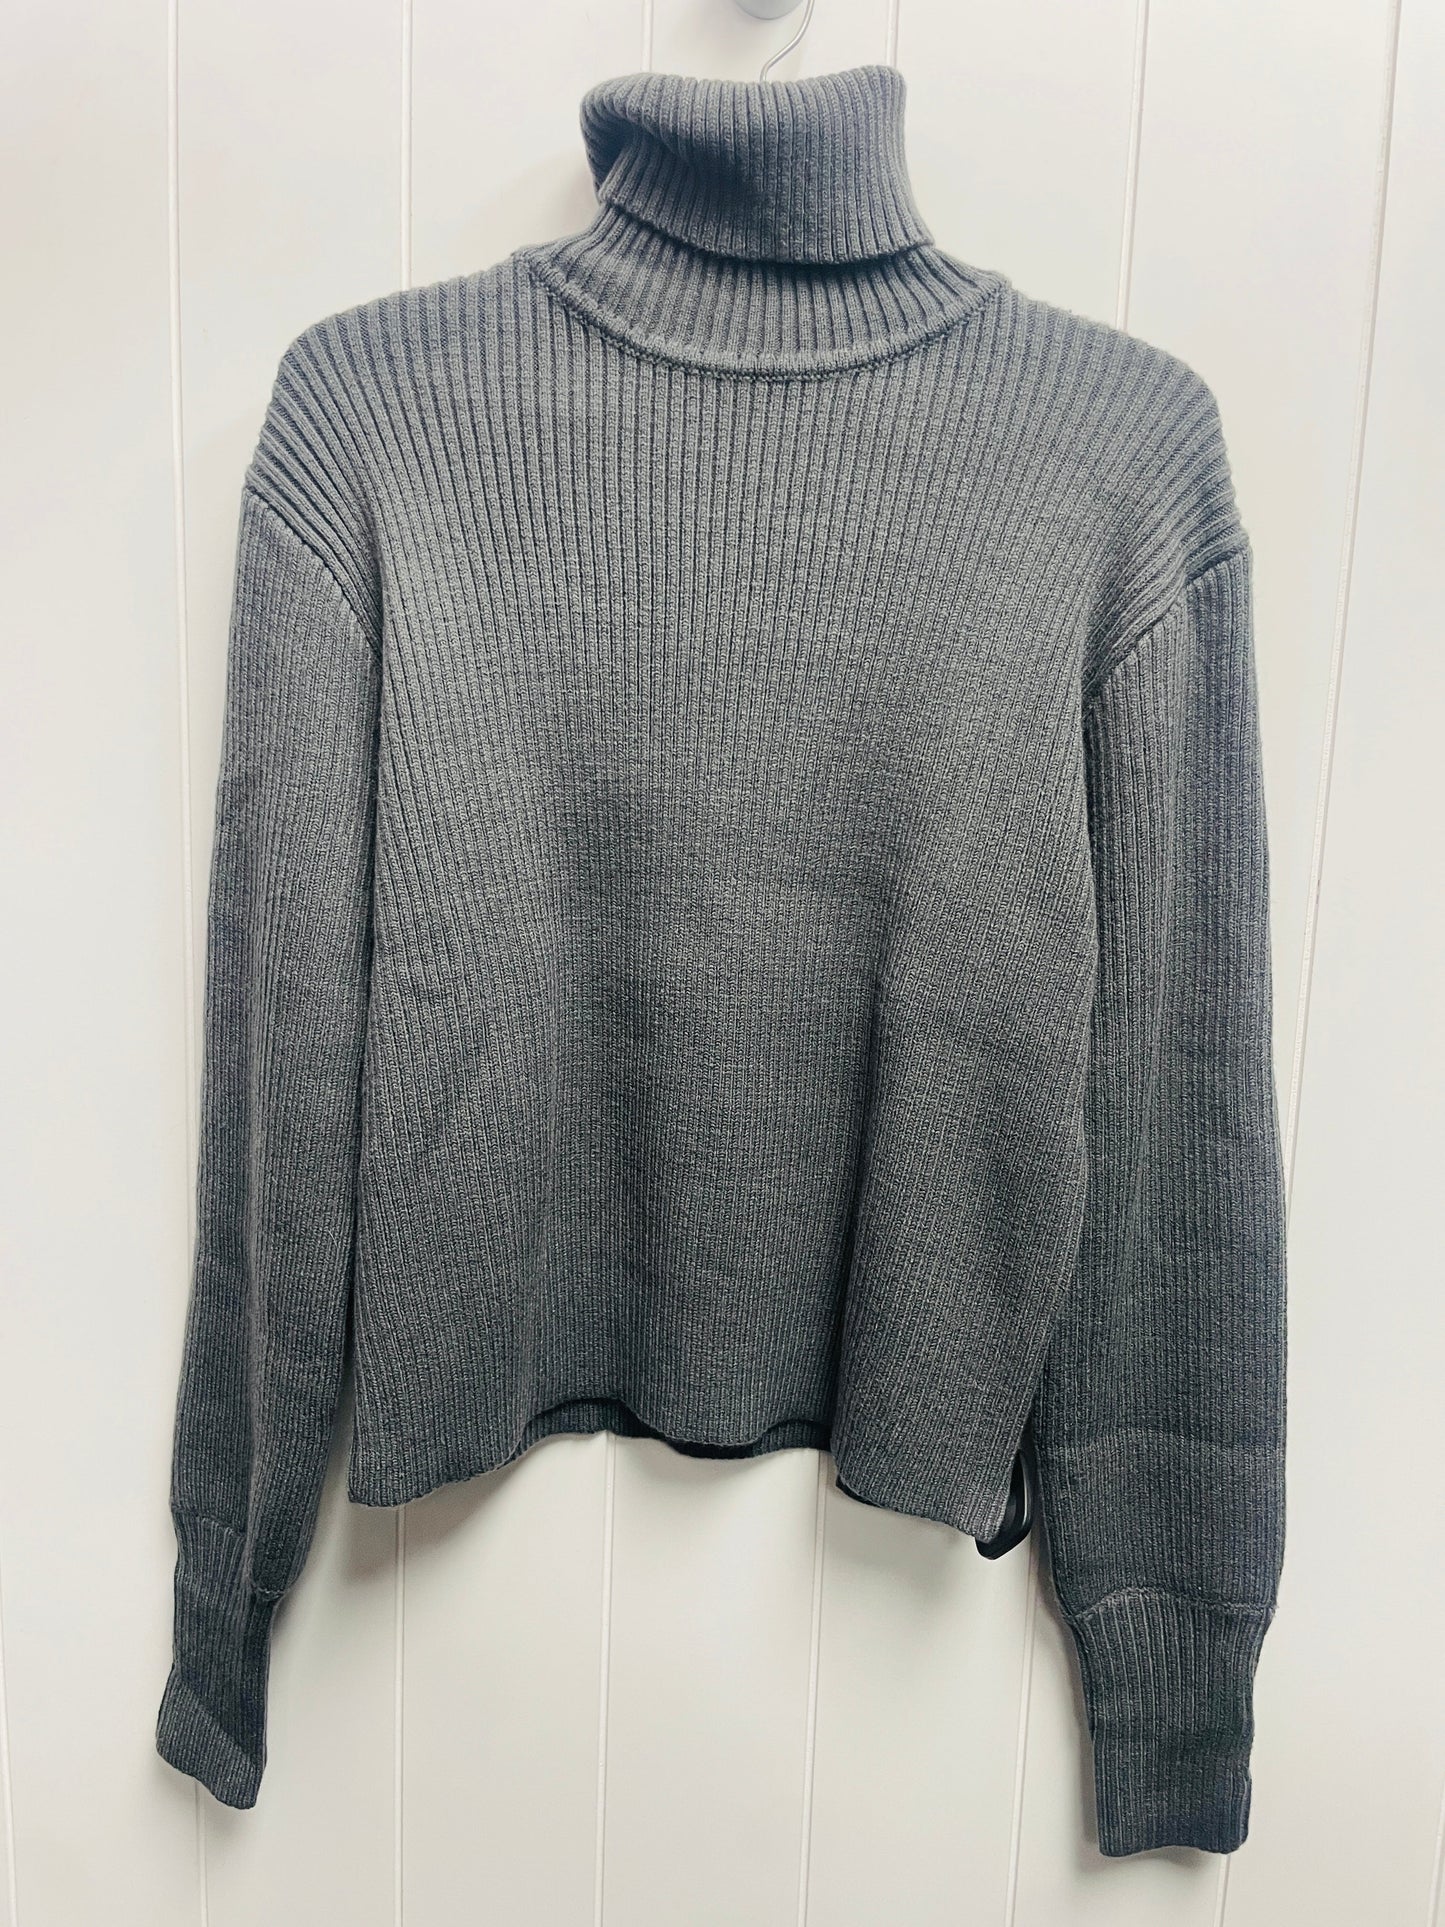 Sweater By kittenish  Size: Xs